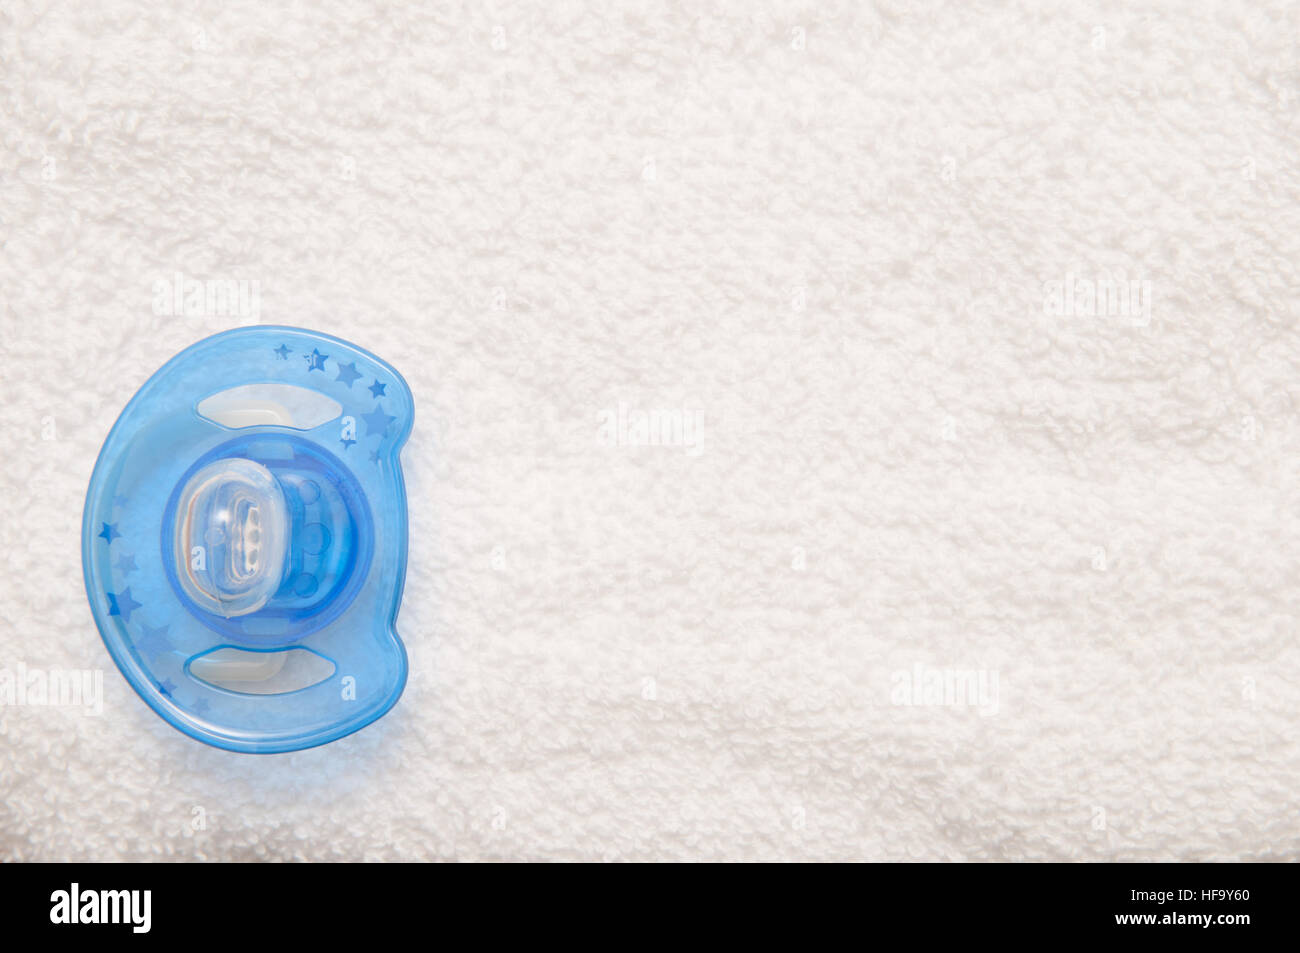 Crianza de los hijos para bebé recién nacido ficticia de fondo sobre una toalla blanca Foto de stock